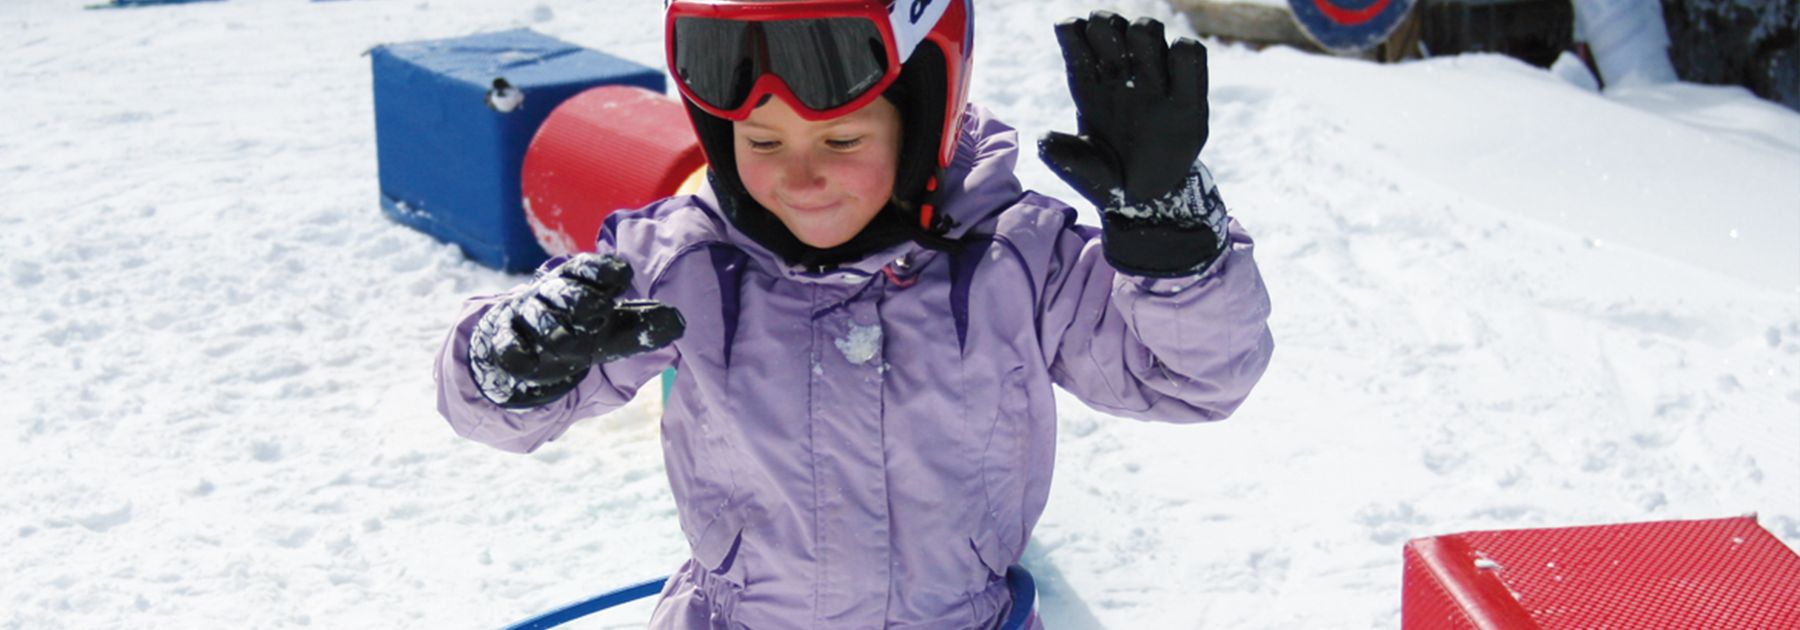 Kinderbetreuung der Skischule Alpbach Aktiv